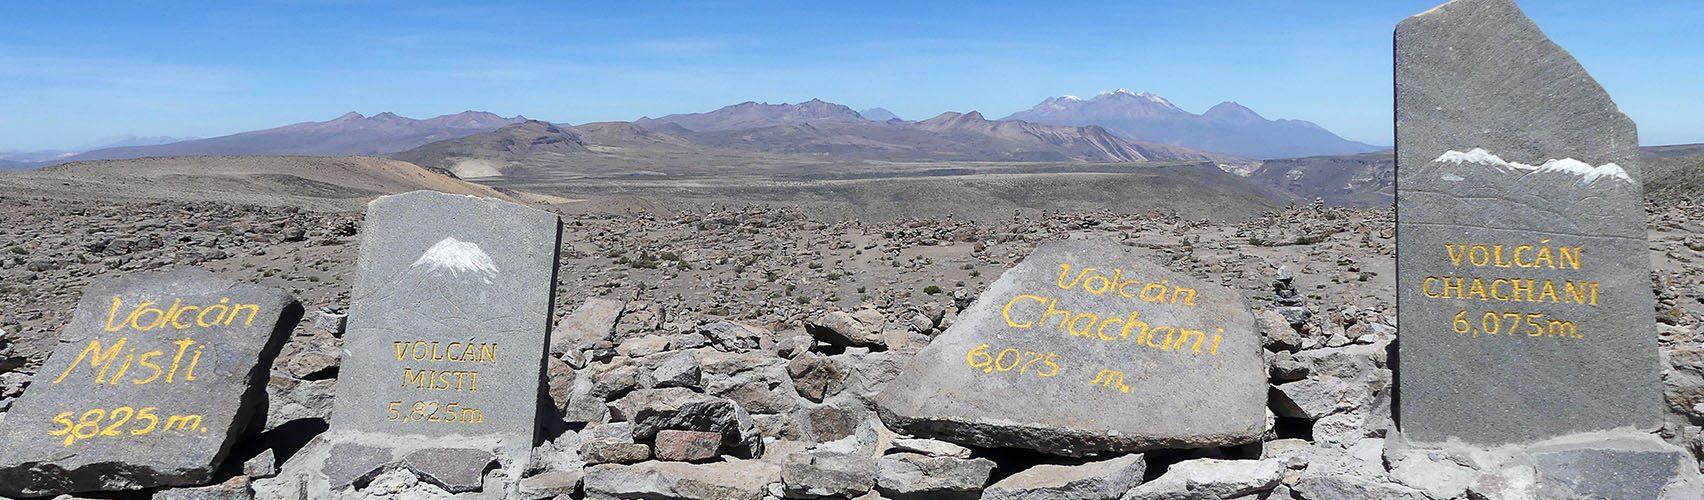 Mirador de los Andes met de vulkanen op de achtergrond